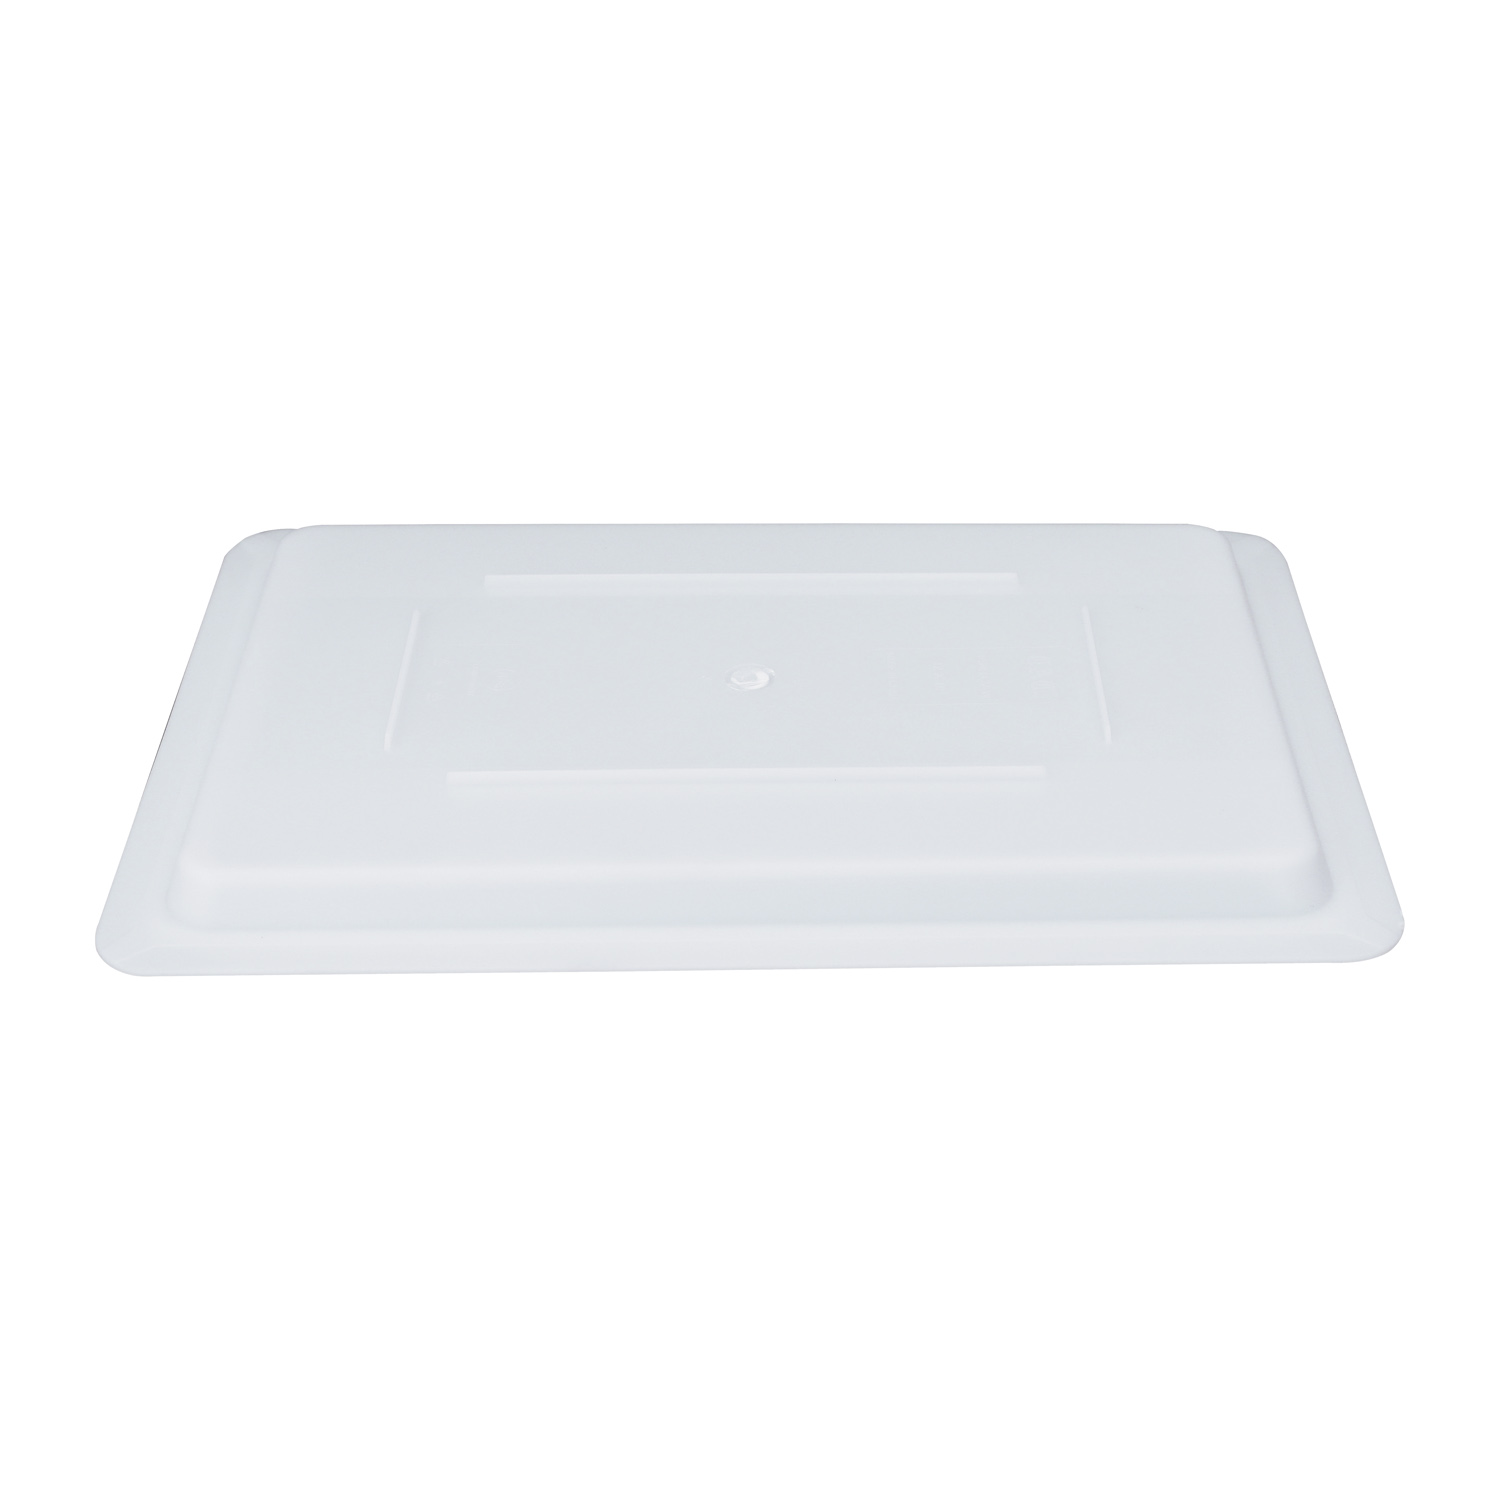 CAC China FS4H-CV-W Half Size White Polyethylene Food Storage Box Cover 18" x 12"